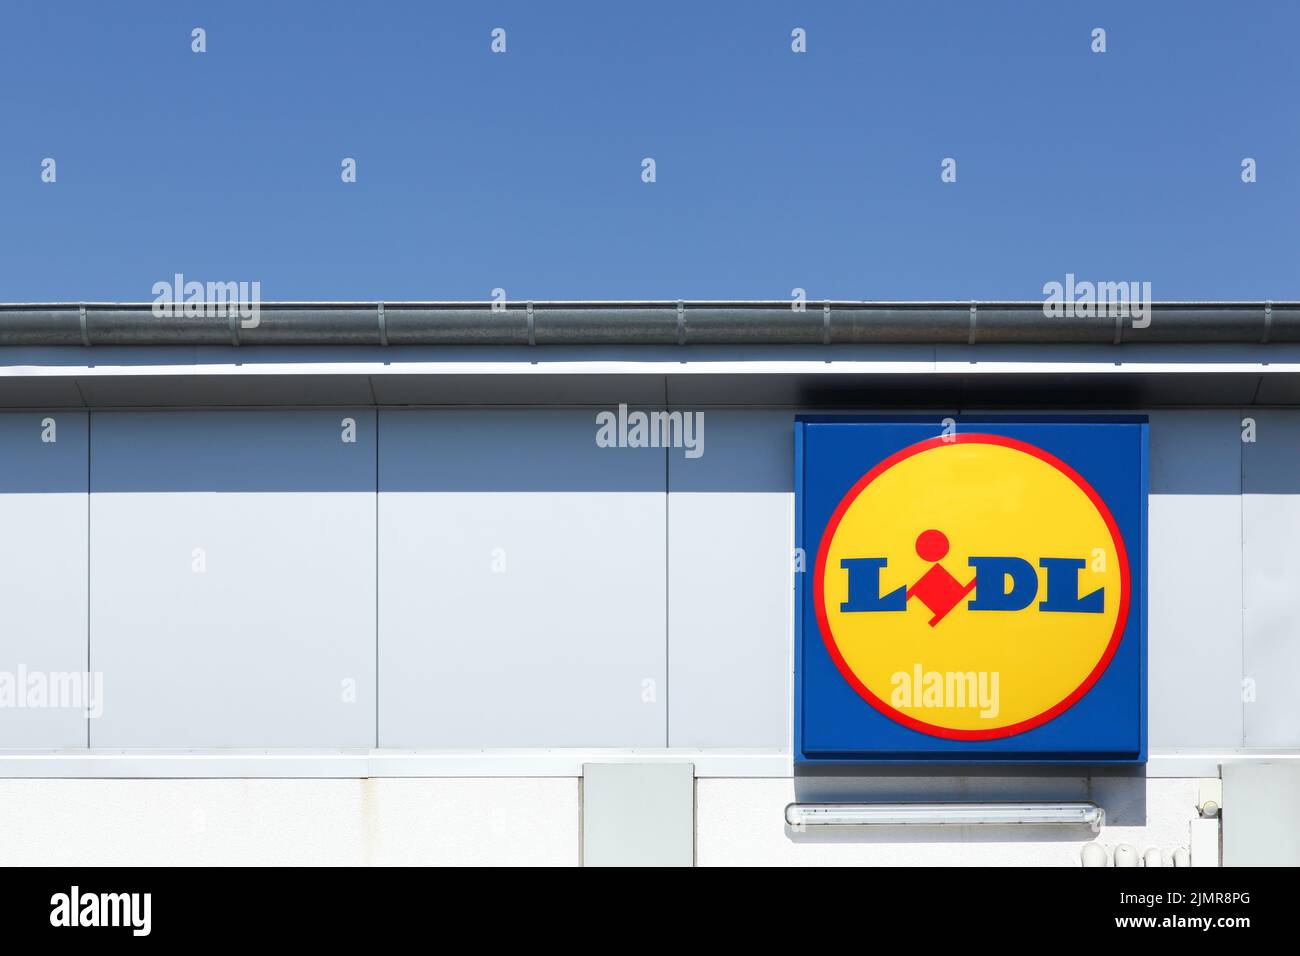 Randers, Dinamarca - 19 de agosto de 2015: Lidl es una cadena alemana de supermercados de descuento, con sede en Neckarsulm, Baden-Wurttemberg, Alemania Foto de stock